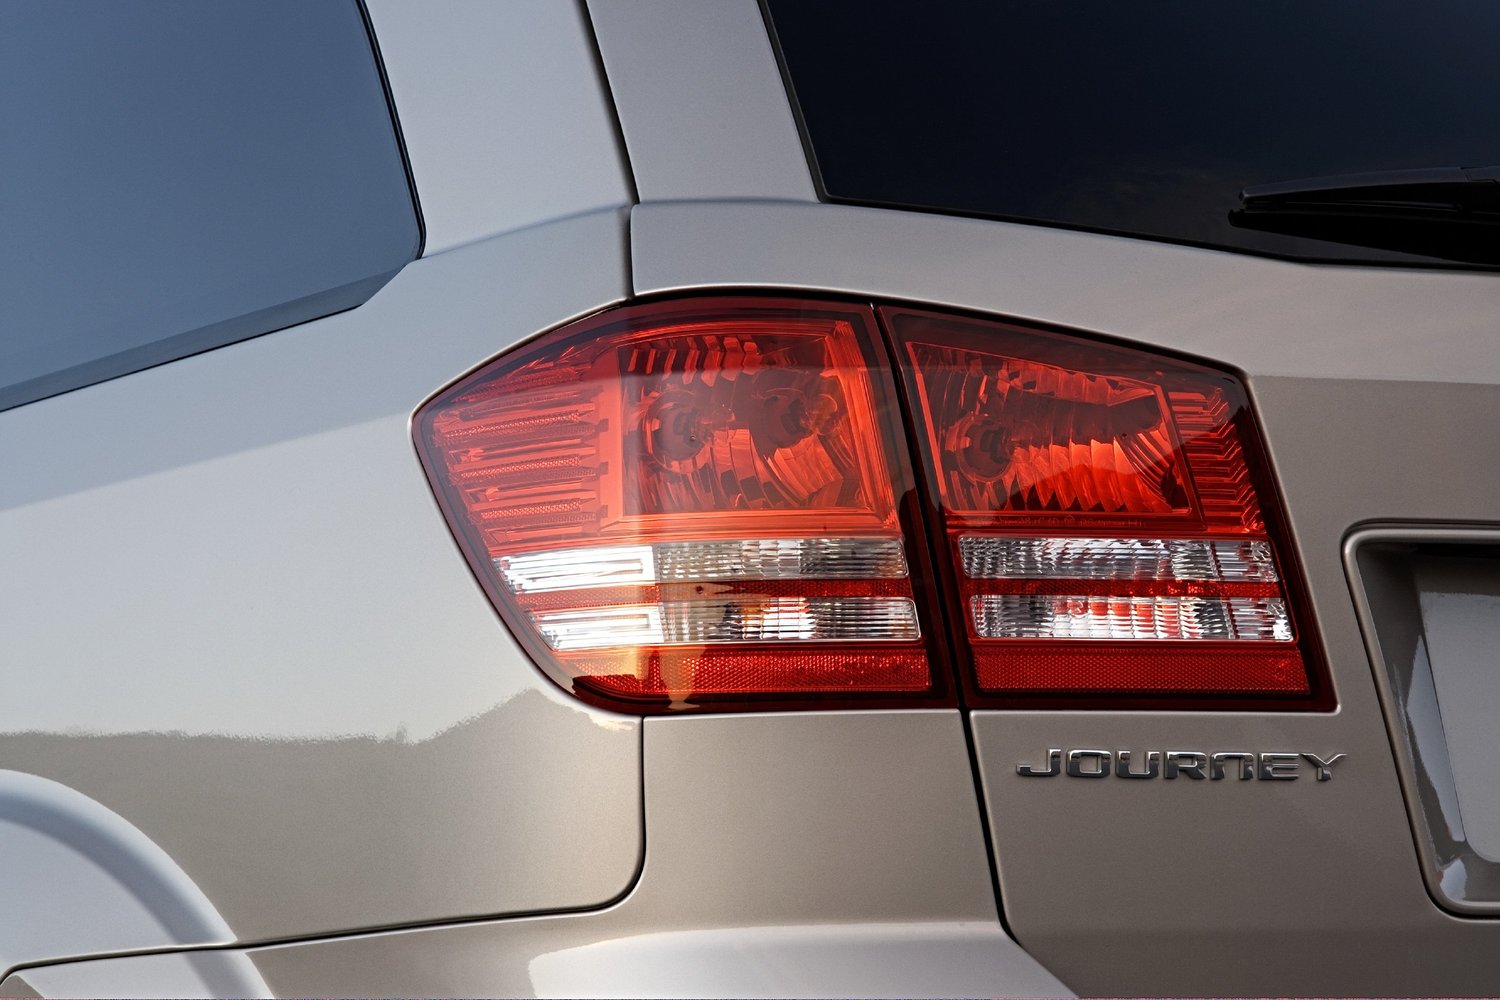 кроссовер Dodge Journey 2008 - 2016г выпуска модификация 2.0 MT (170 л.с.)